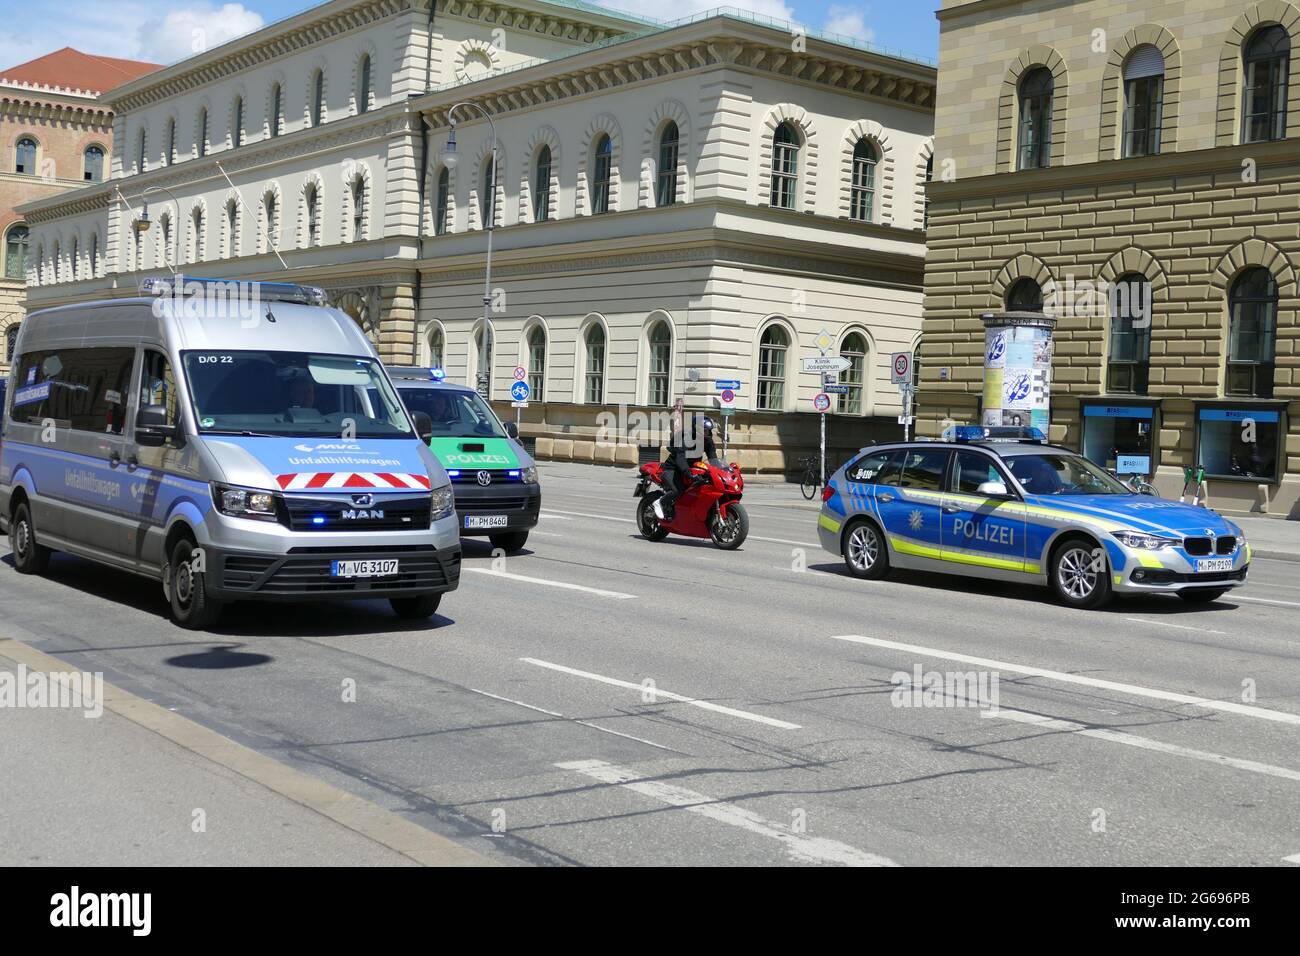 HW car (voiture de service d'urgence technique) et la voiture de police soutiennent un vendredi pour une future démonstration de jeunes. Banque D'Images